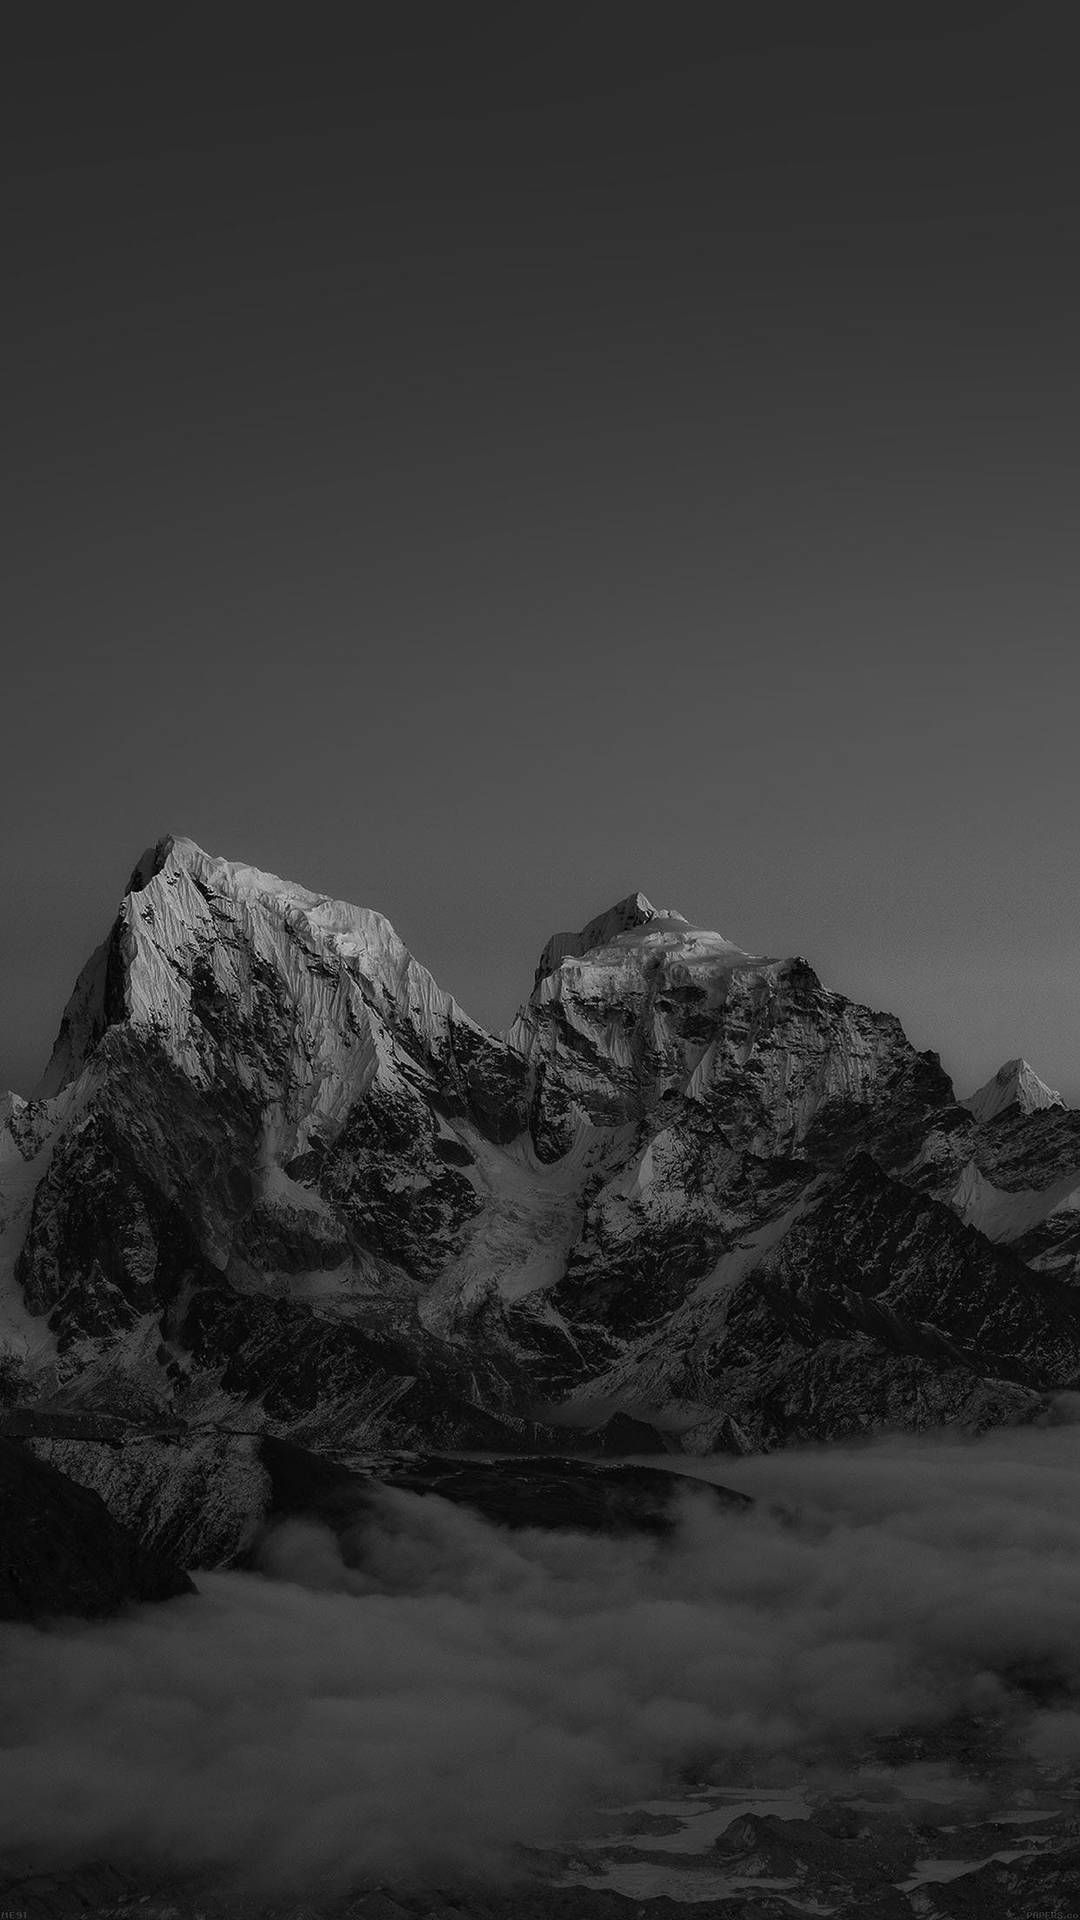 A majestic mountain peak in monochrome. Wallpaper